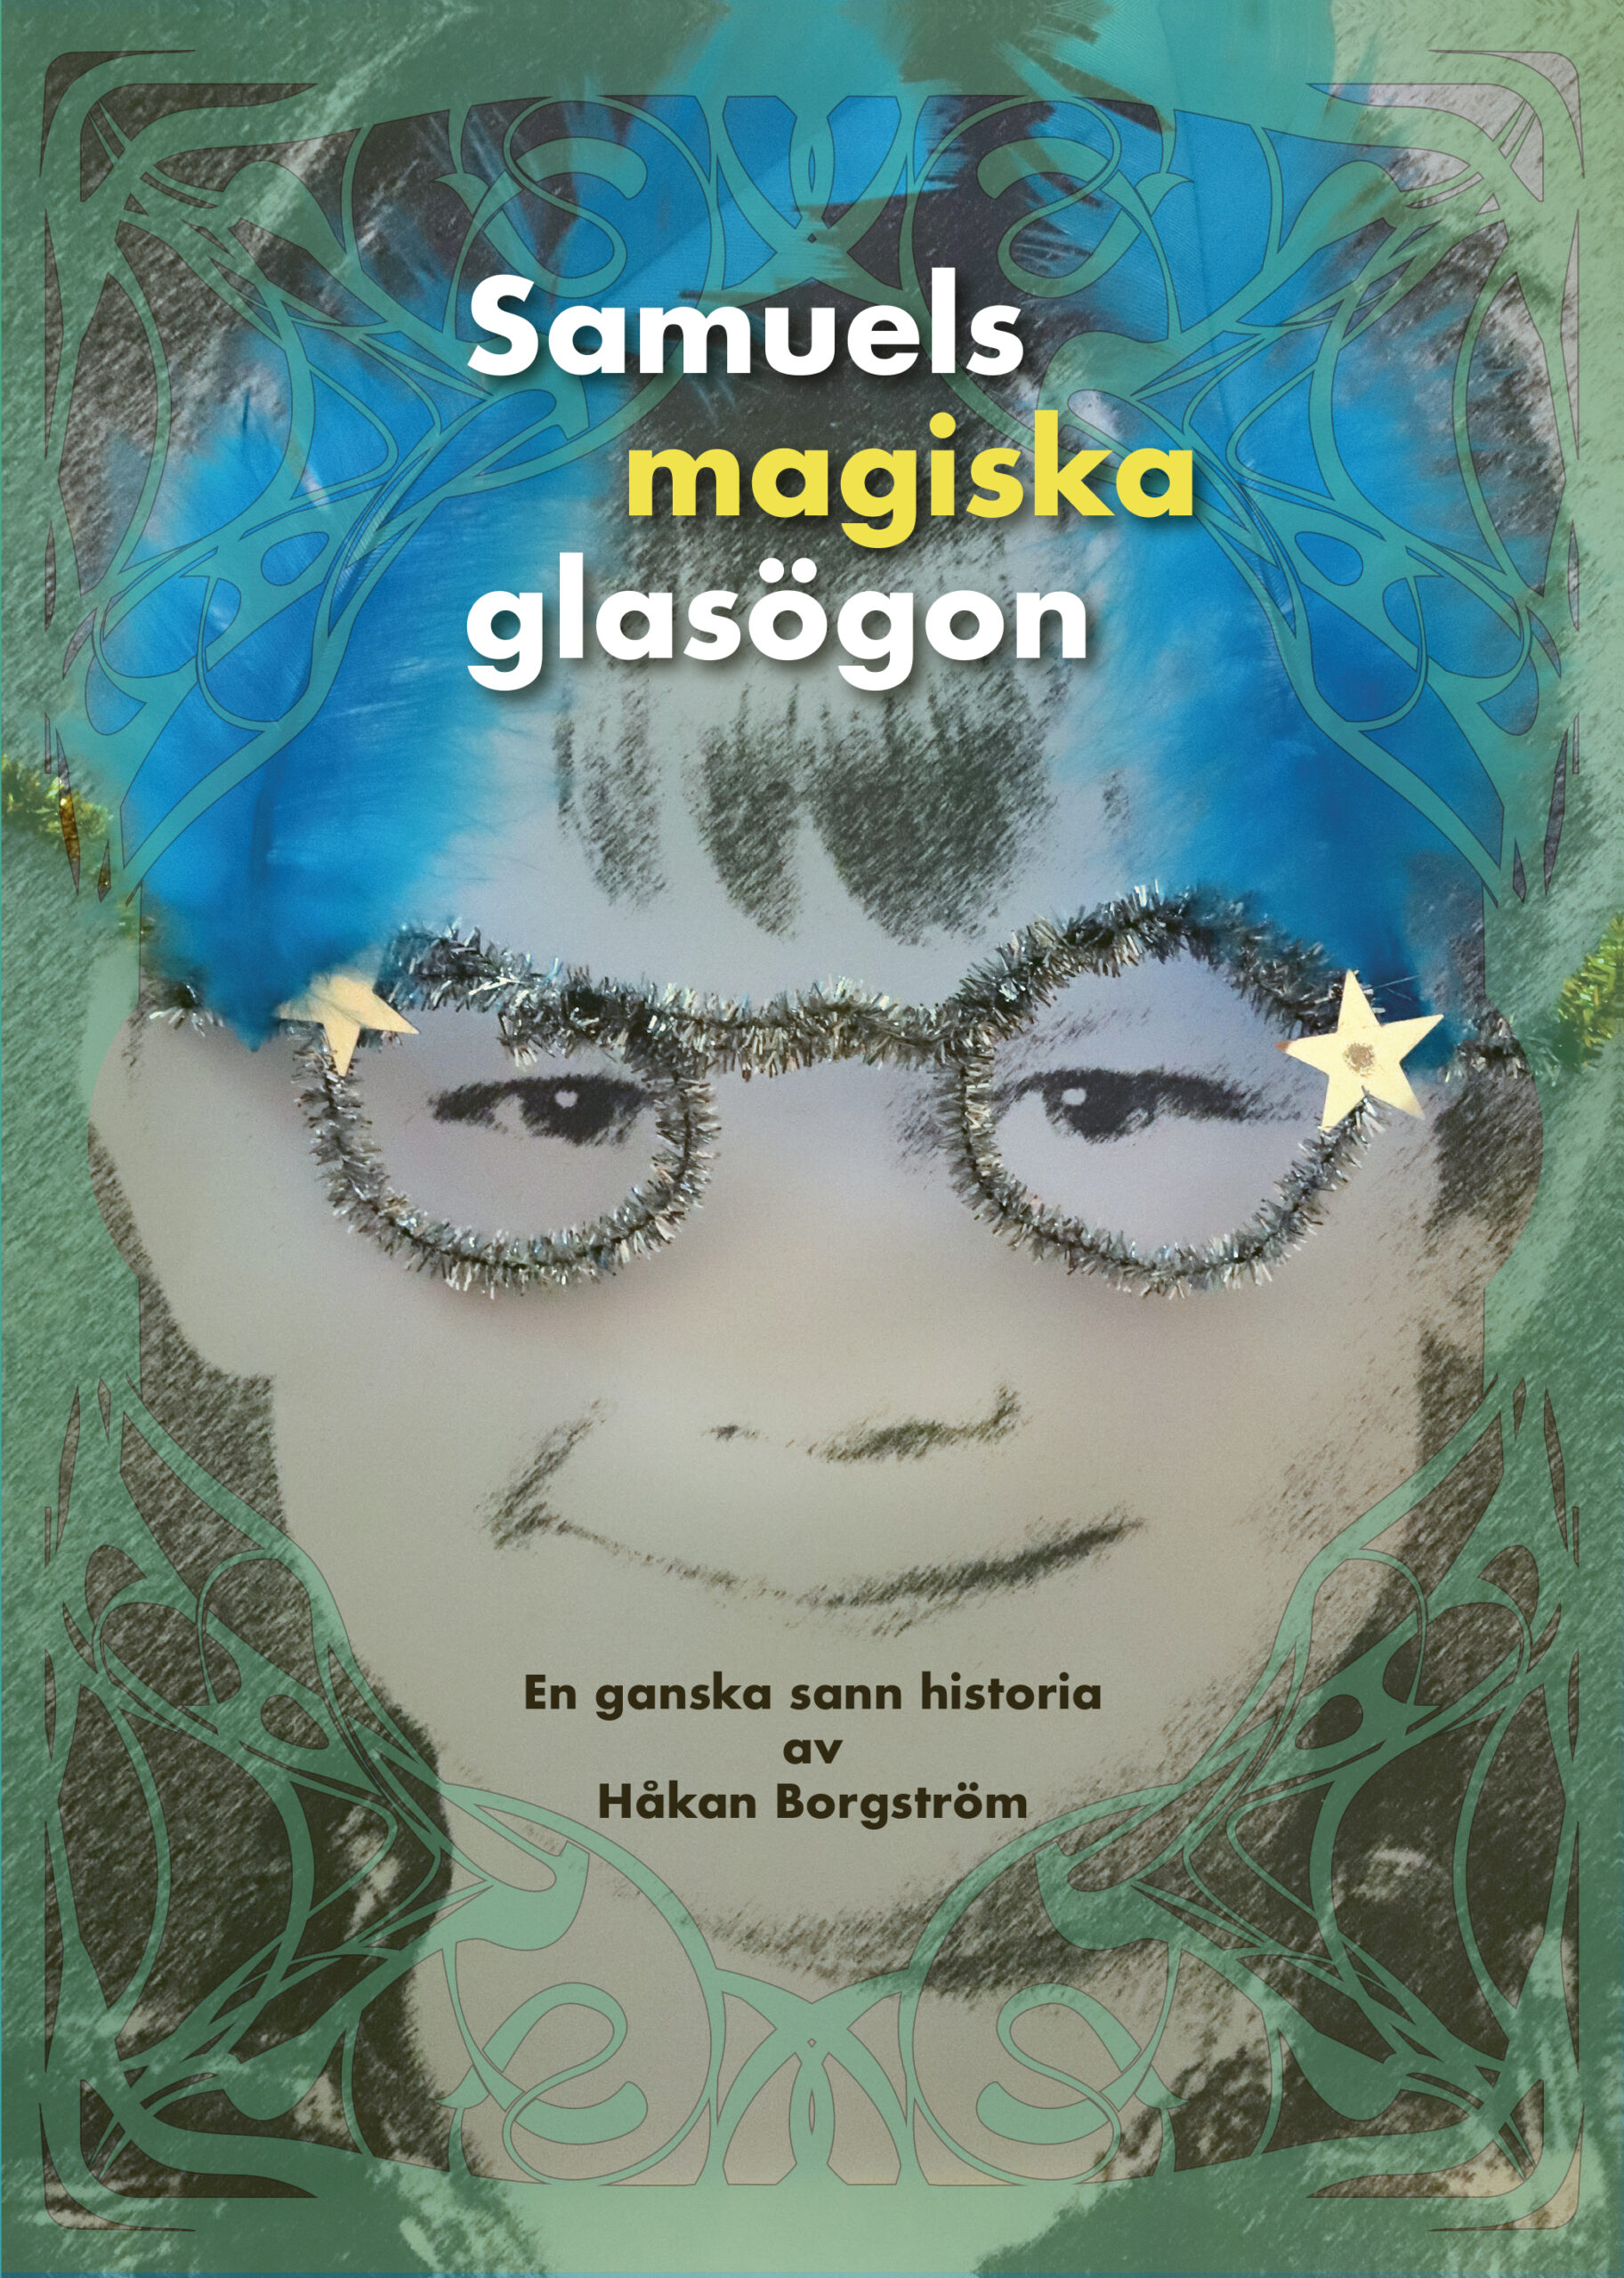 Omslaget till boken Samuels magiska glasögon med en svartvit bild på en pojke som har på sig ett par glasögon av piprensare med blåa fjädrar.